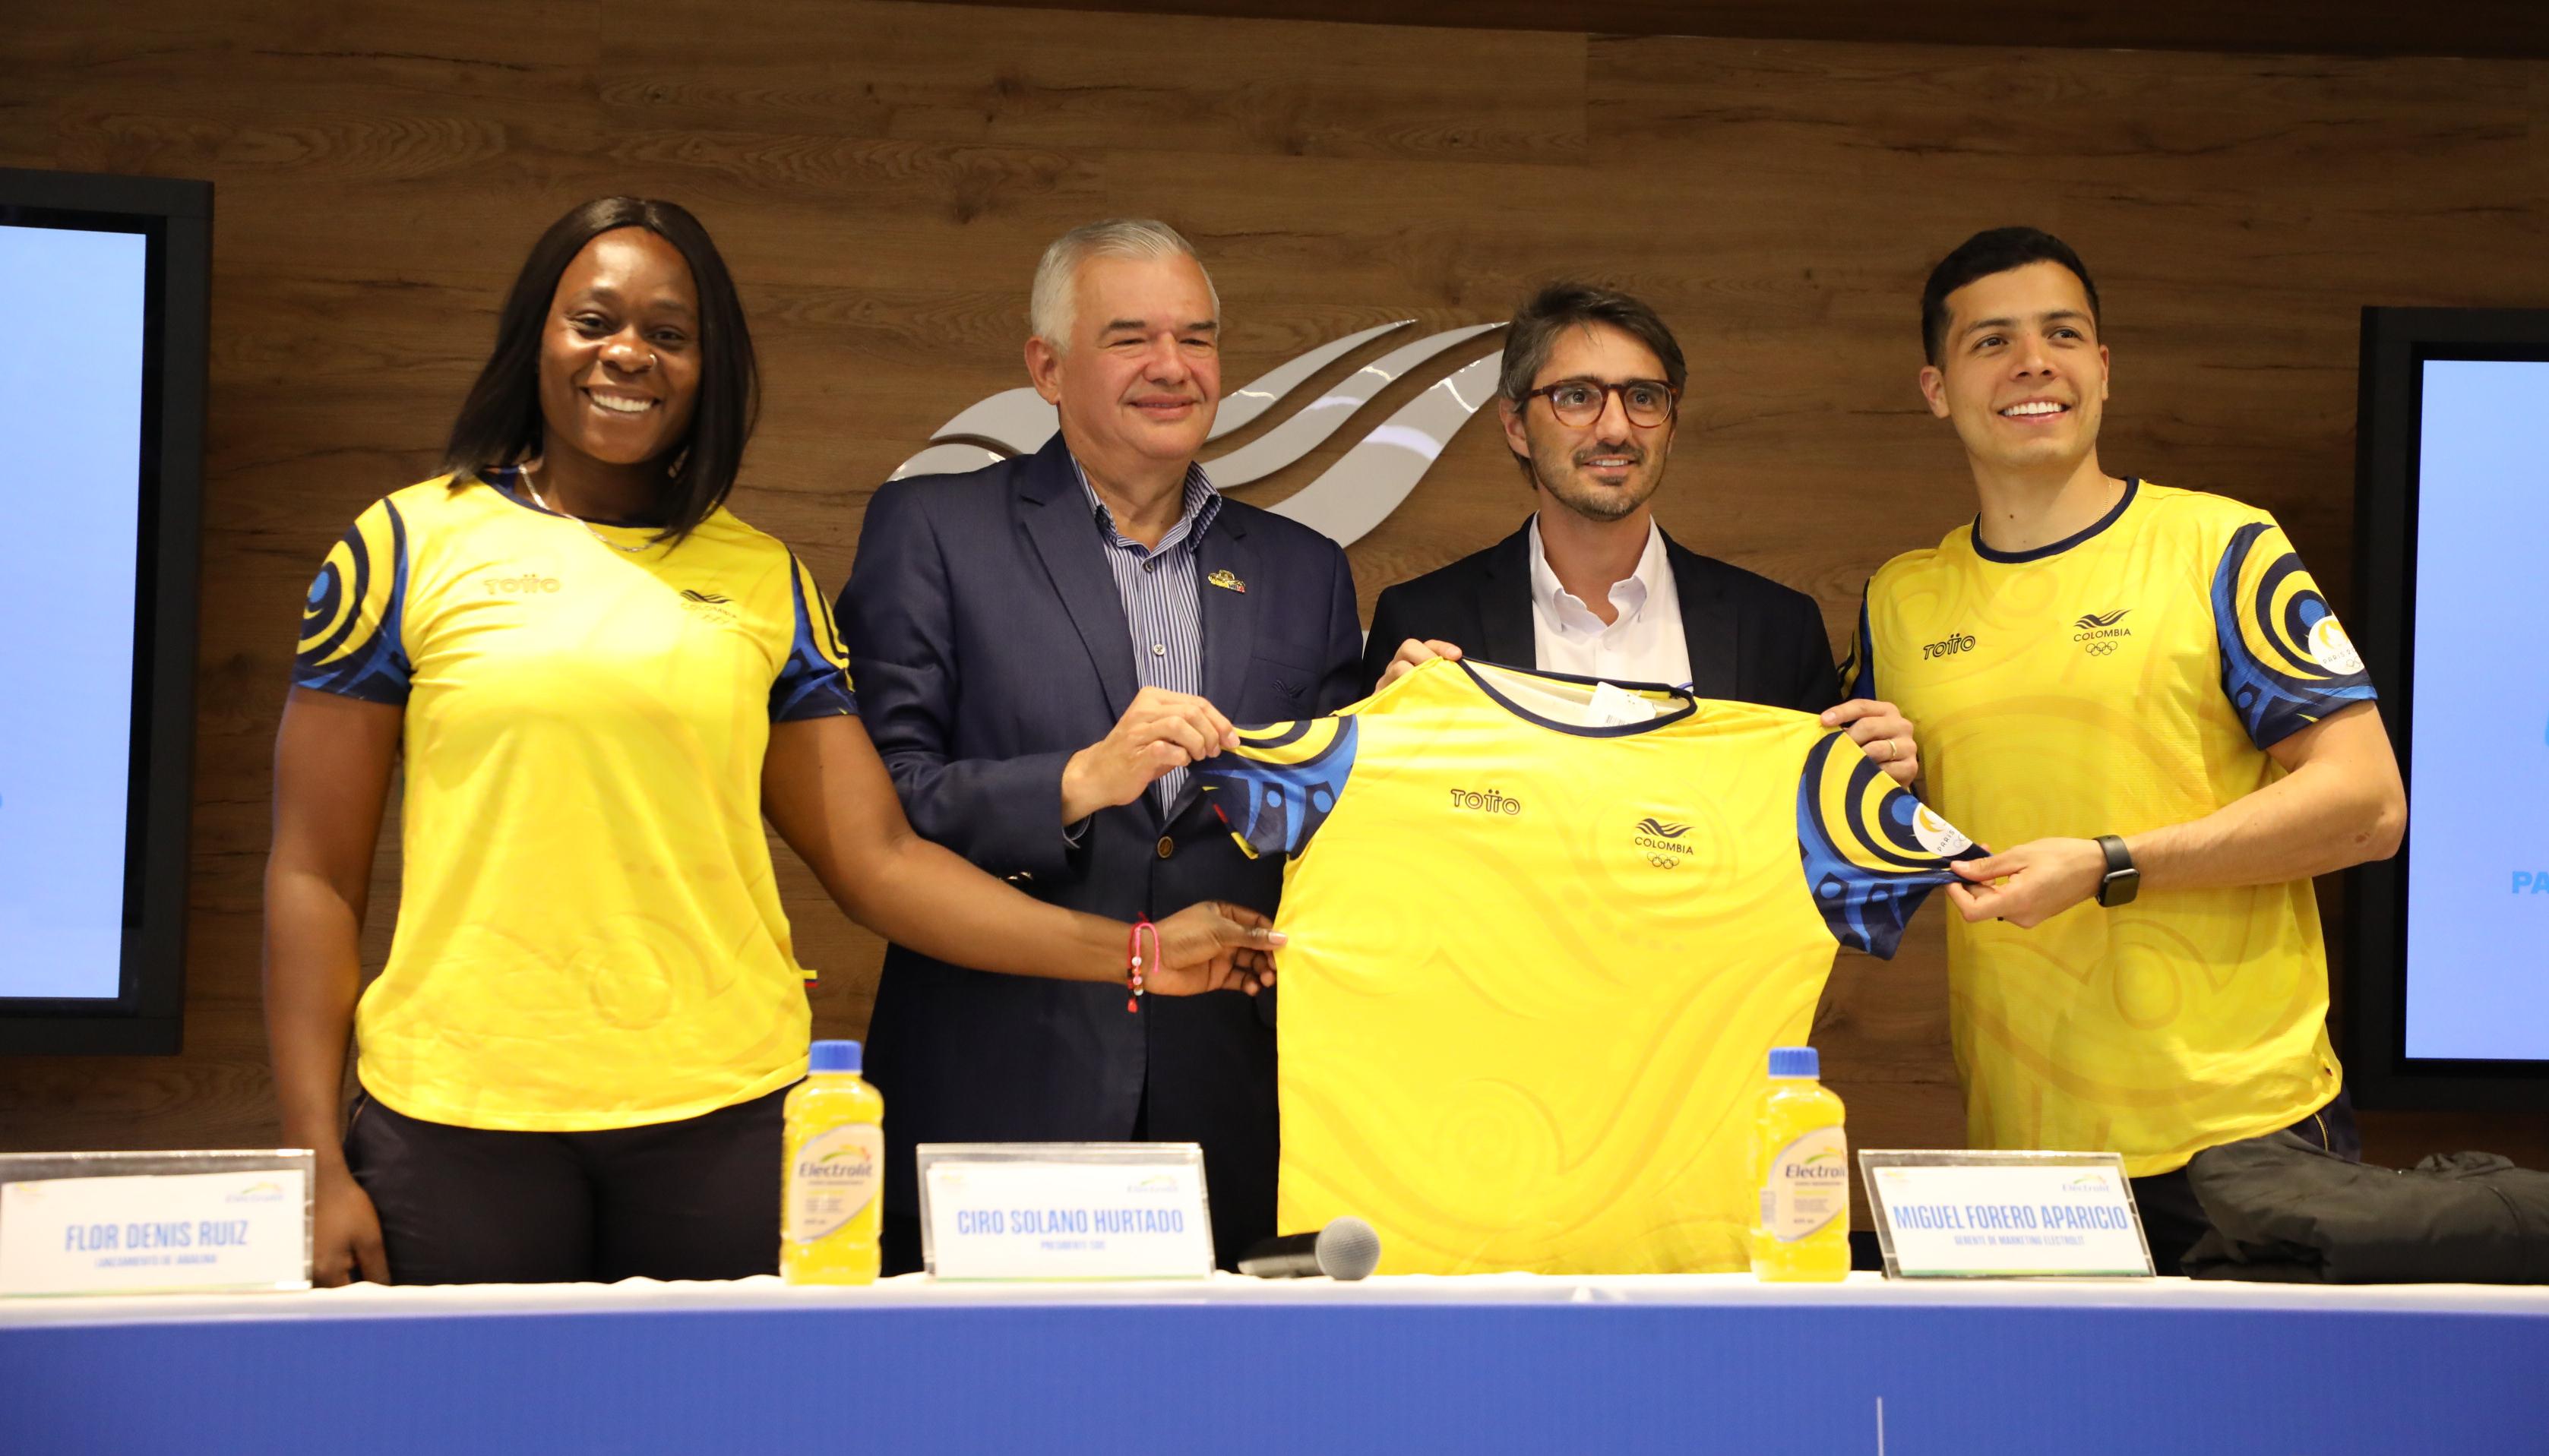 Ciro Solano, presidente del COC, con los deportistas Flor Denis Ruiz y Diego Arboleda.